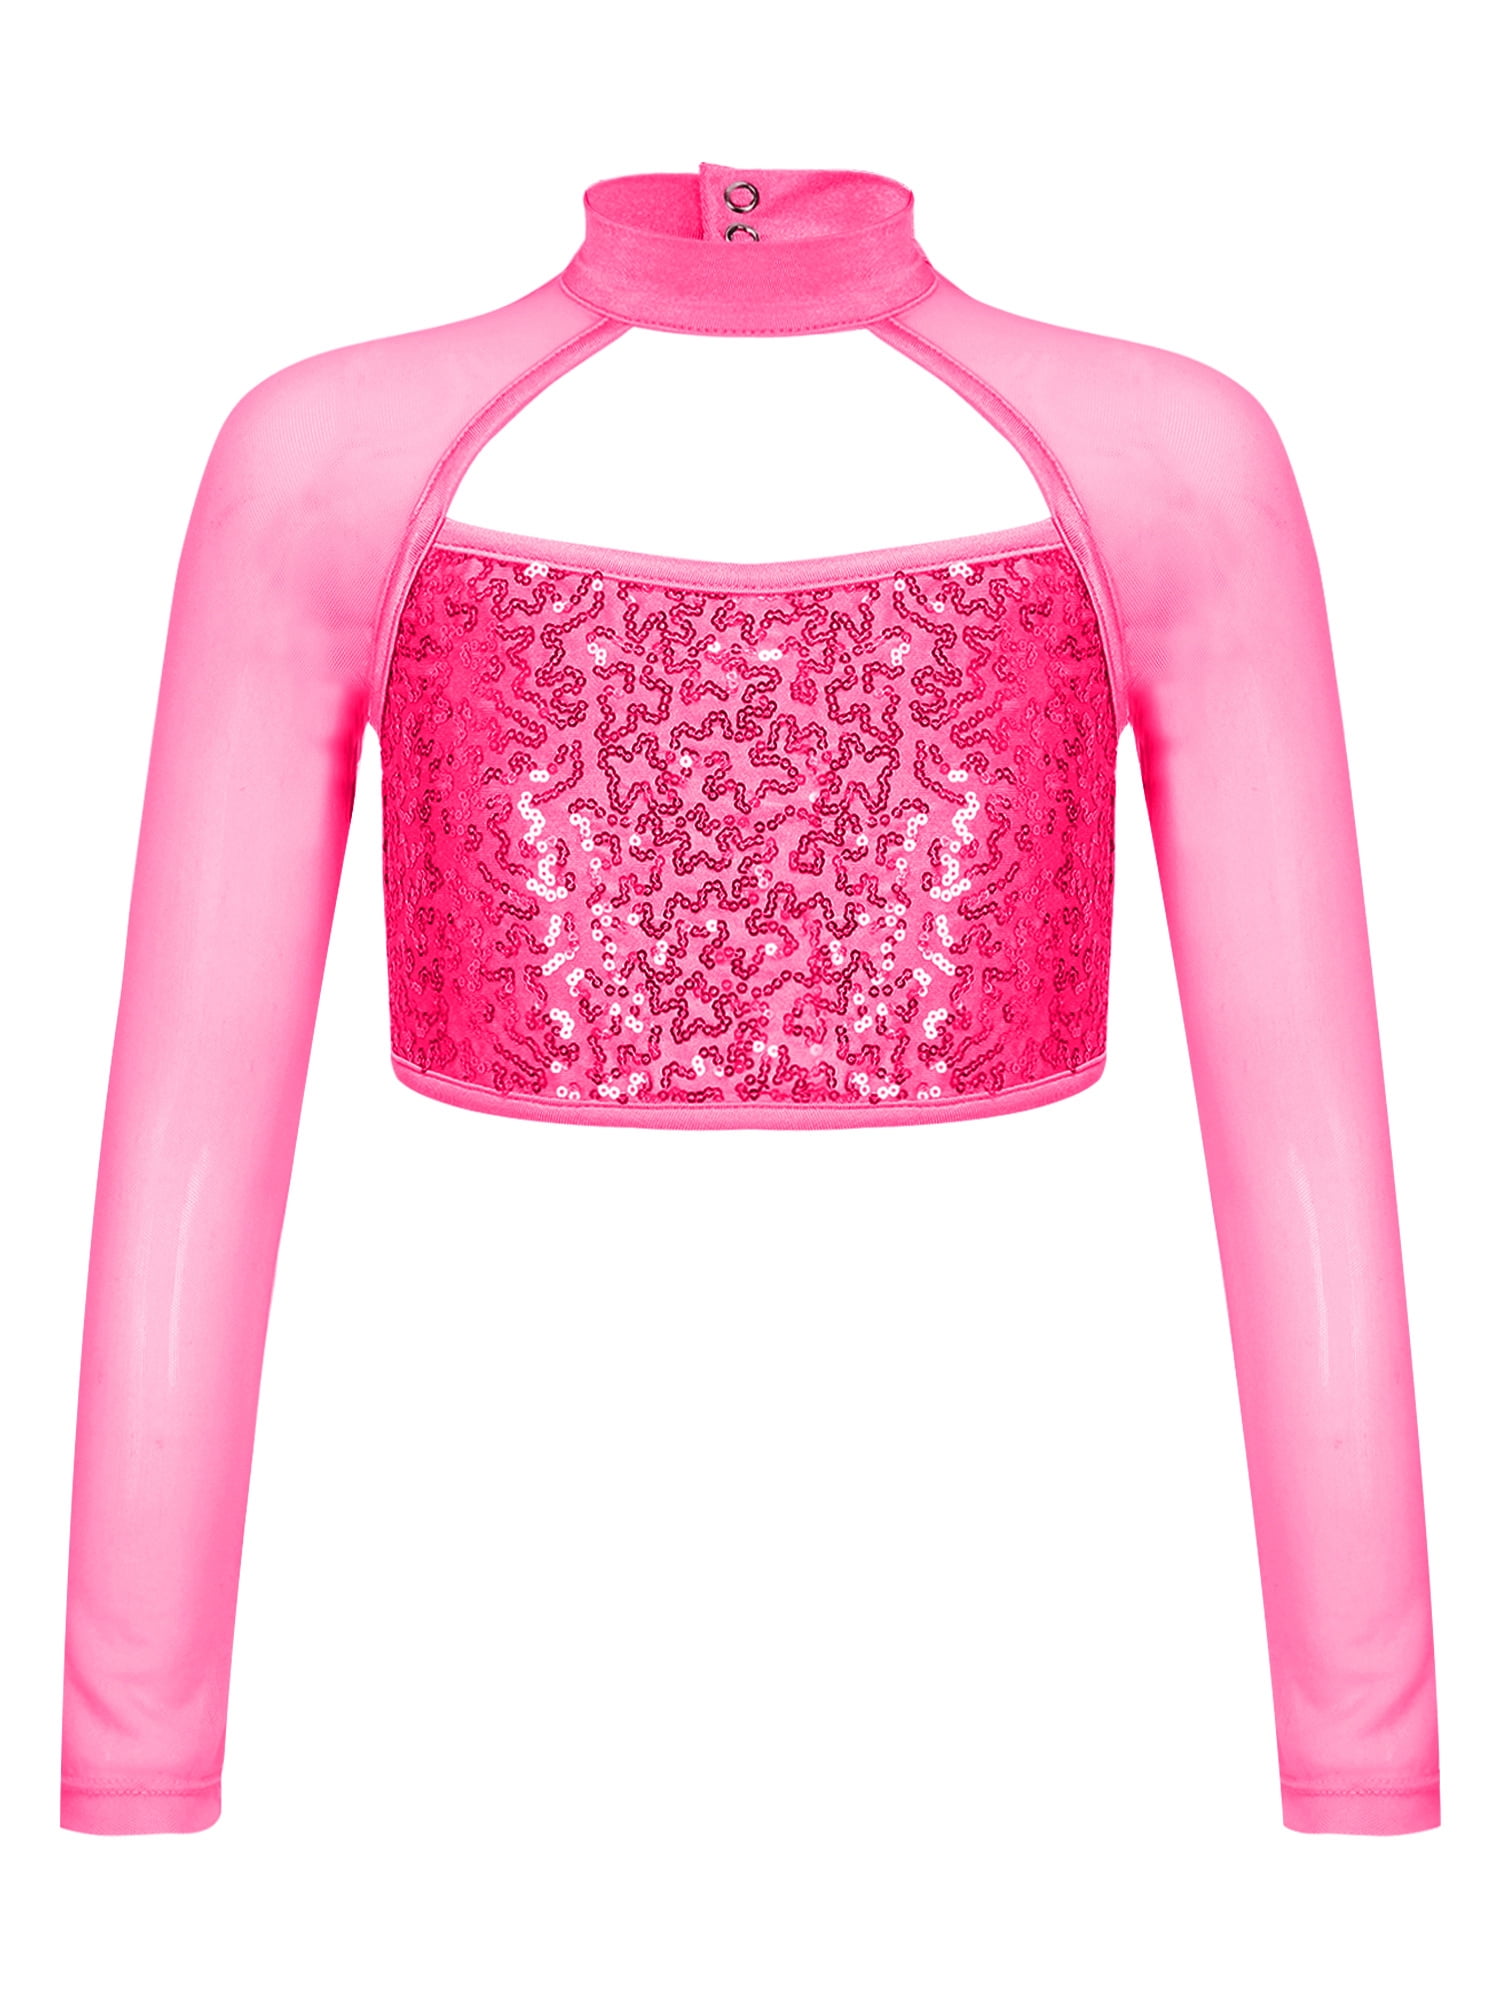 DPOIS Kids Girls Sequin Mock Neck Long Sleeve Gymnastics Dance Crop Top Hot  Pink 16 